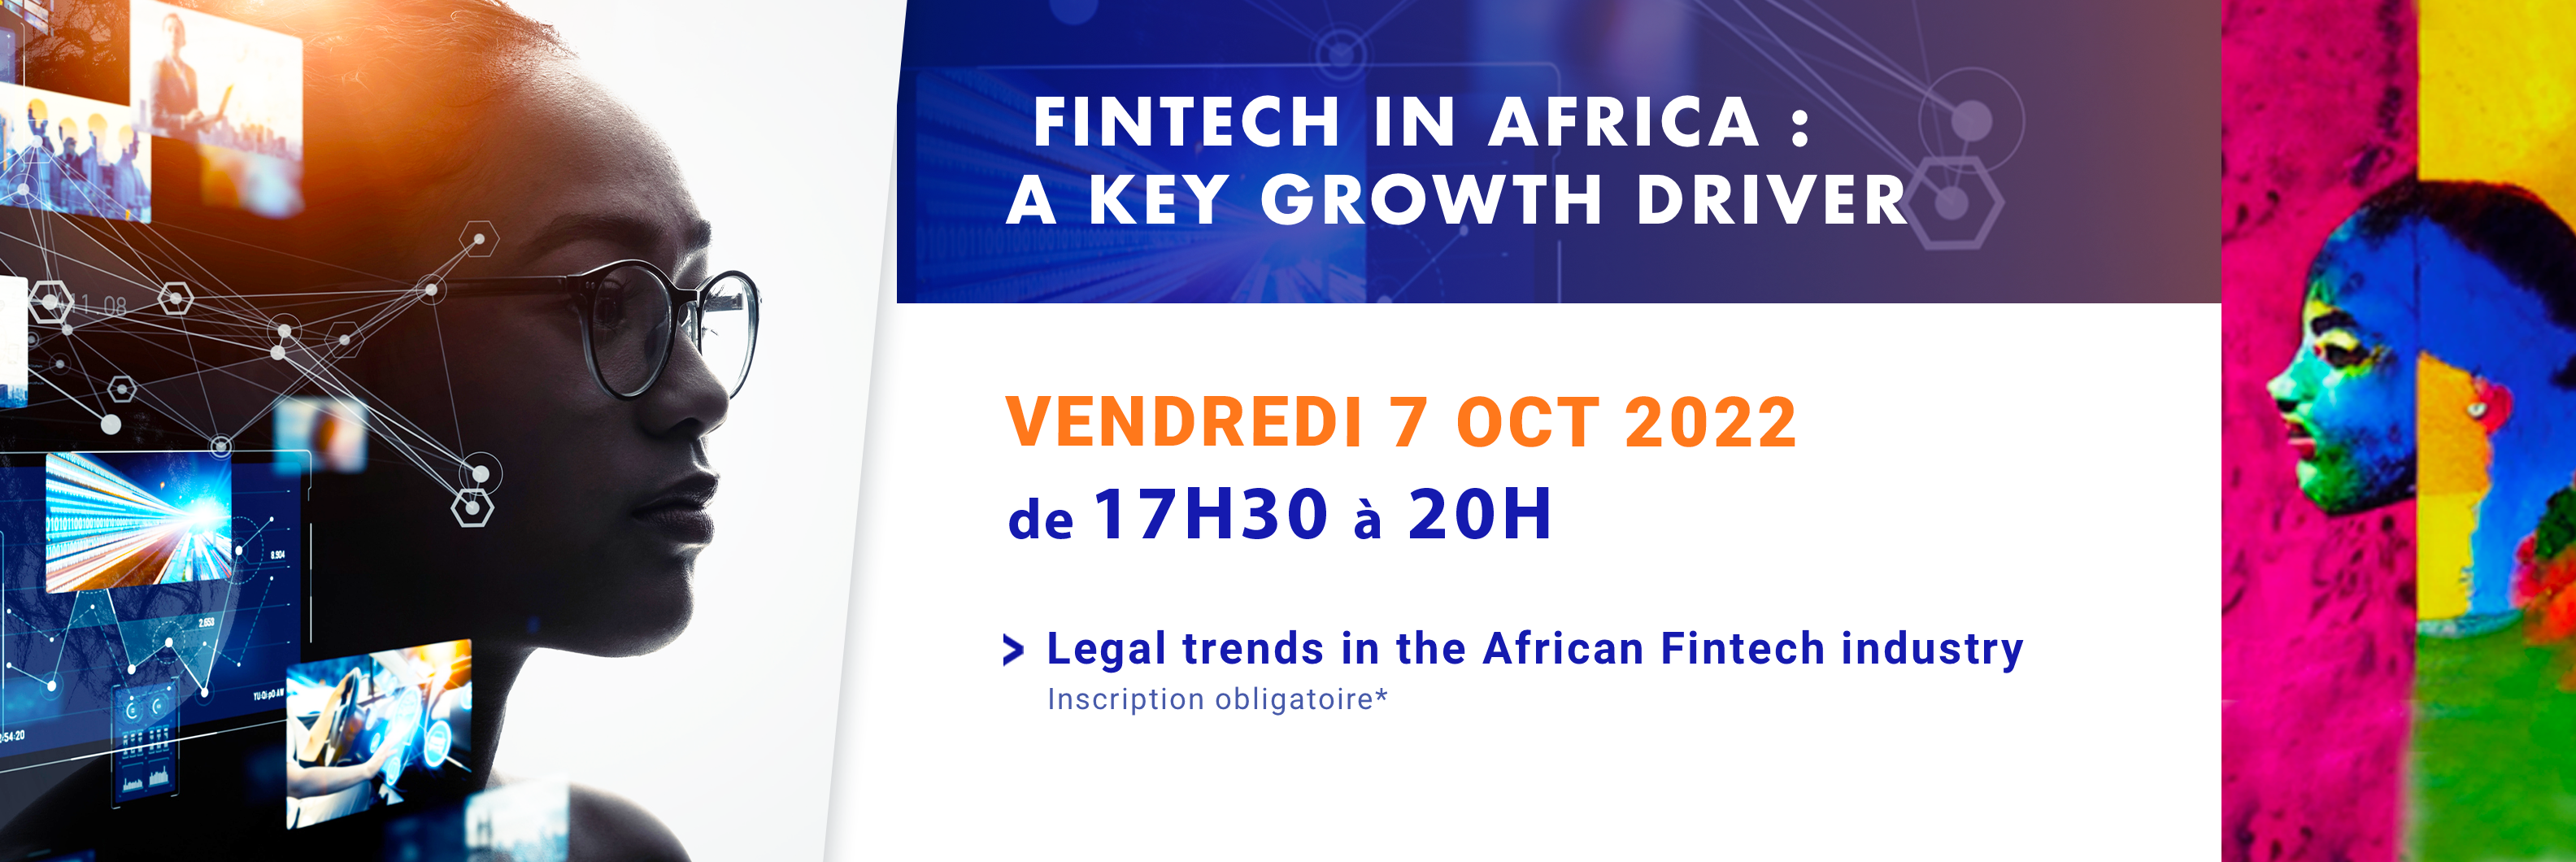 Fintech in Africa, thème de la conférence annuelle de l’ABLC le 7 octobre 2022.